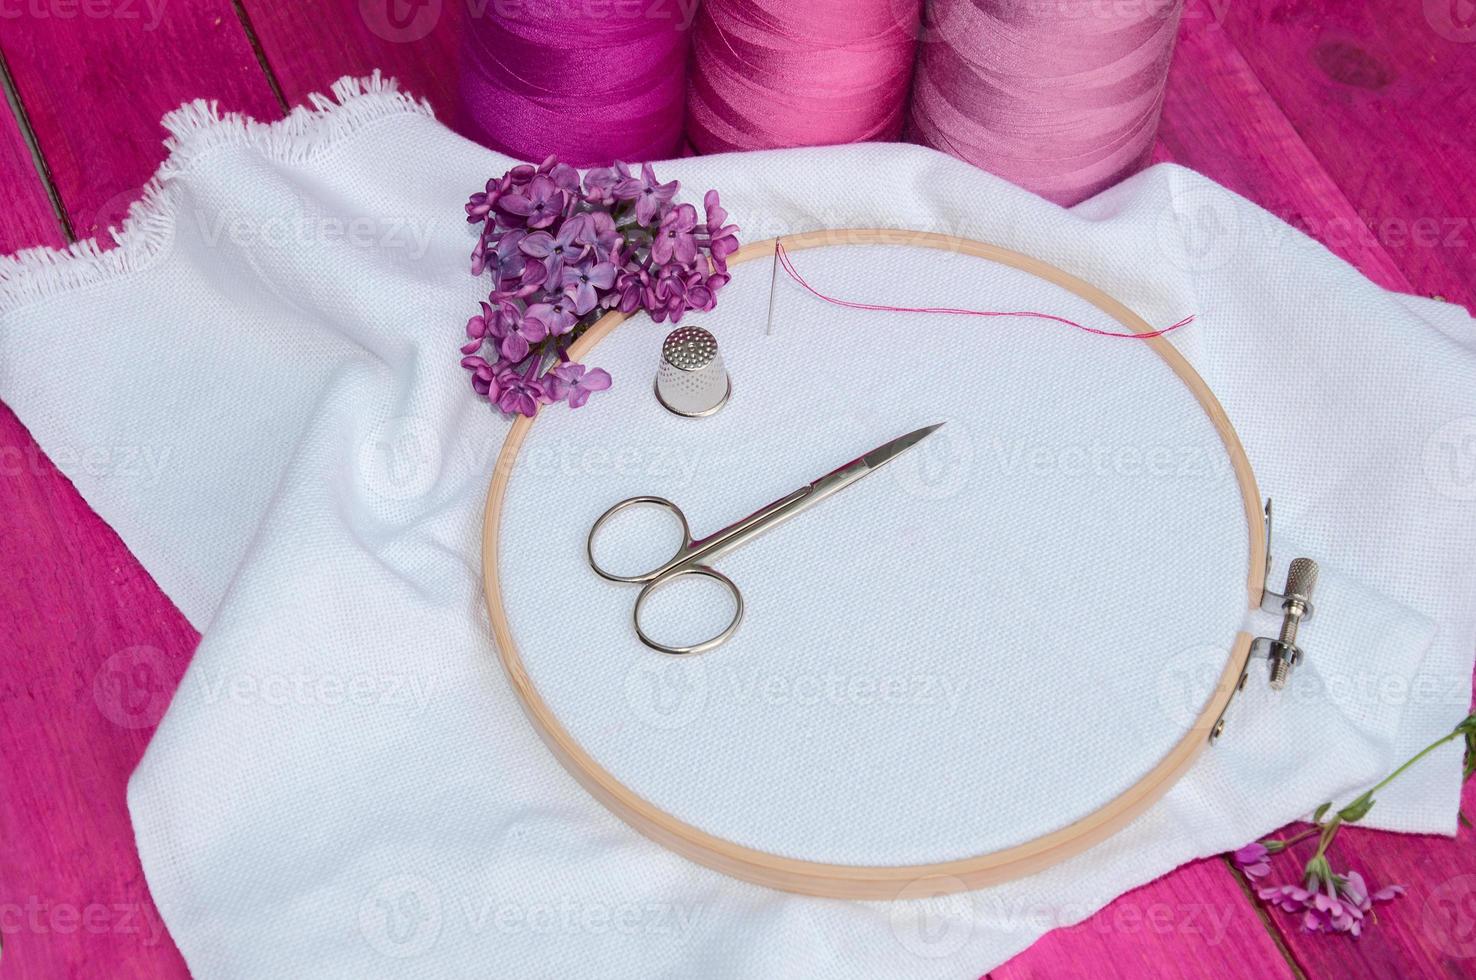 fil rose et tissu blanc dans le cadre de broderie en bois pour la couture photo